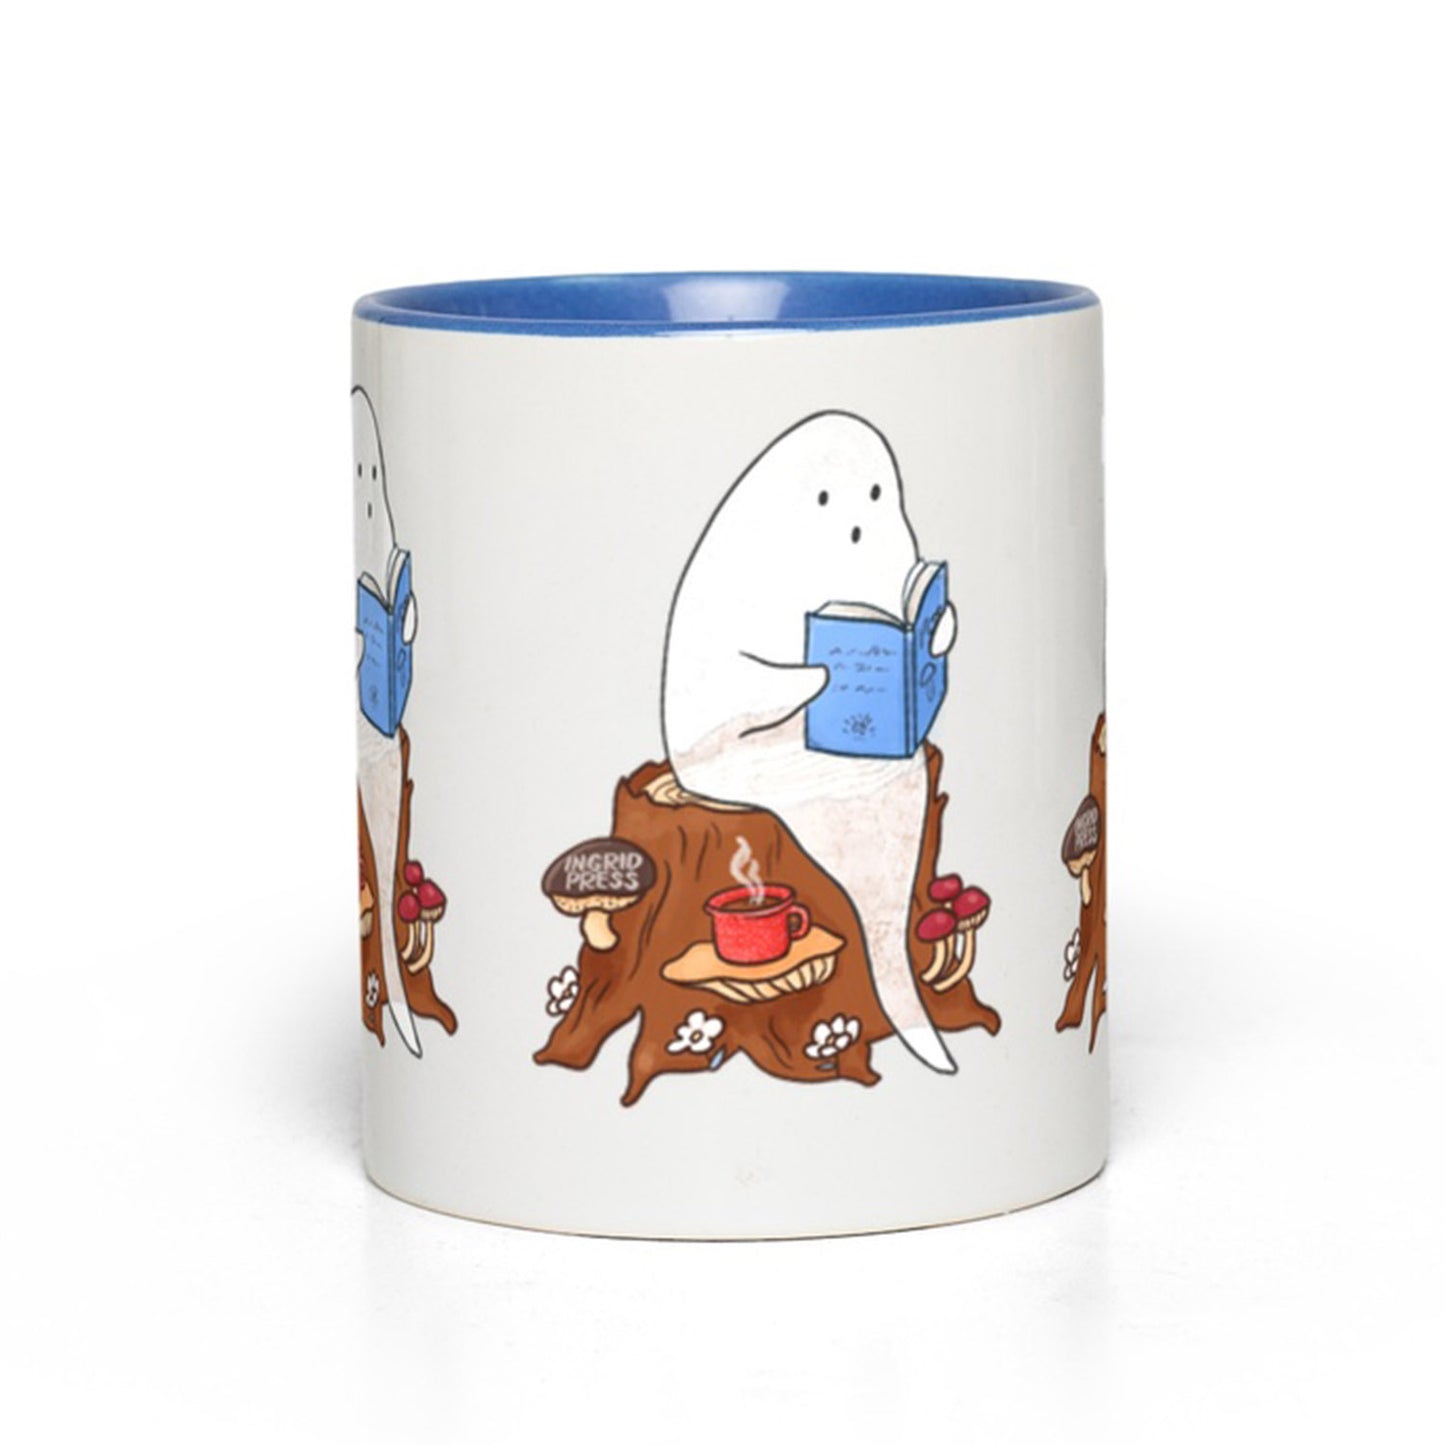 Spooky Stories Ceramic Mug